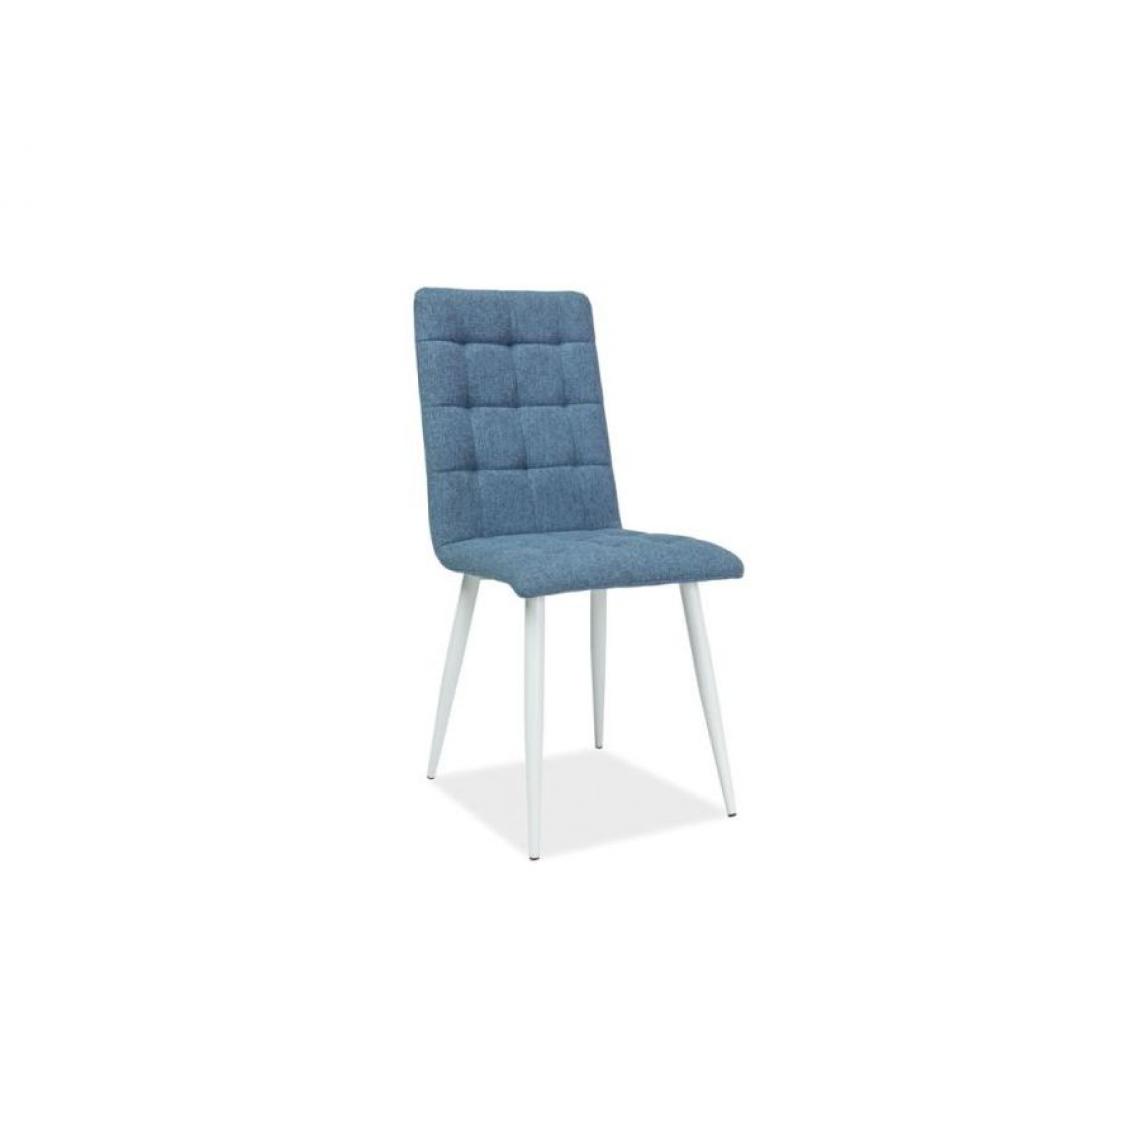 Hucoco - OTTA | Chaise moderne avec pieds en métal salon salle à manger | Dimensions : 94x44x39 cm | Rembourrée en tissu | Ergonomique - Bleu - Chaises